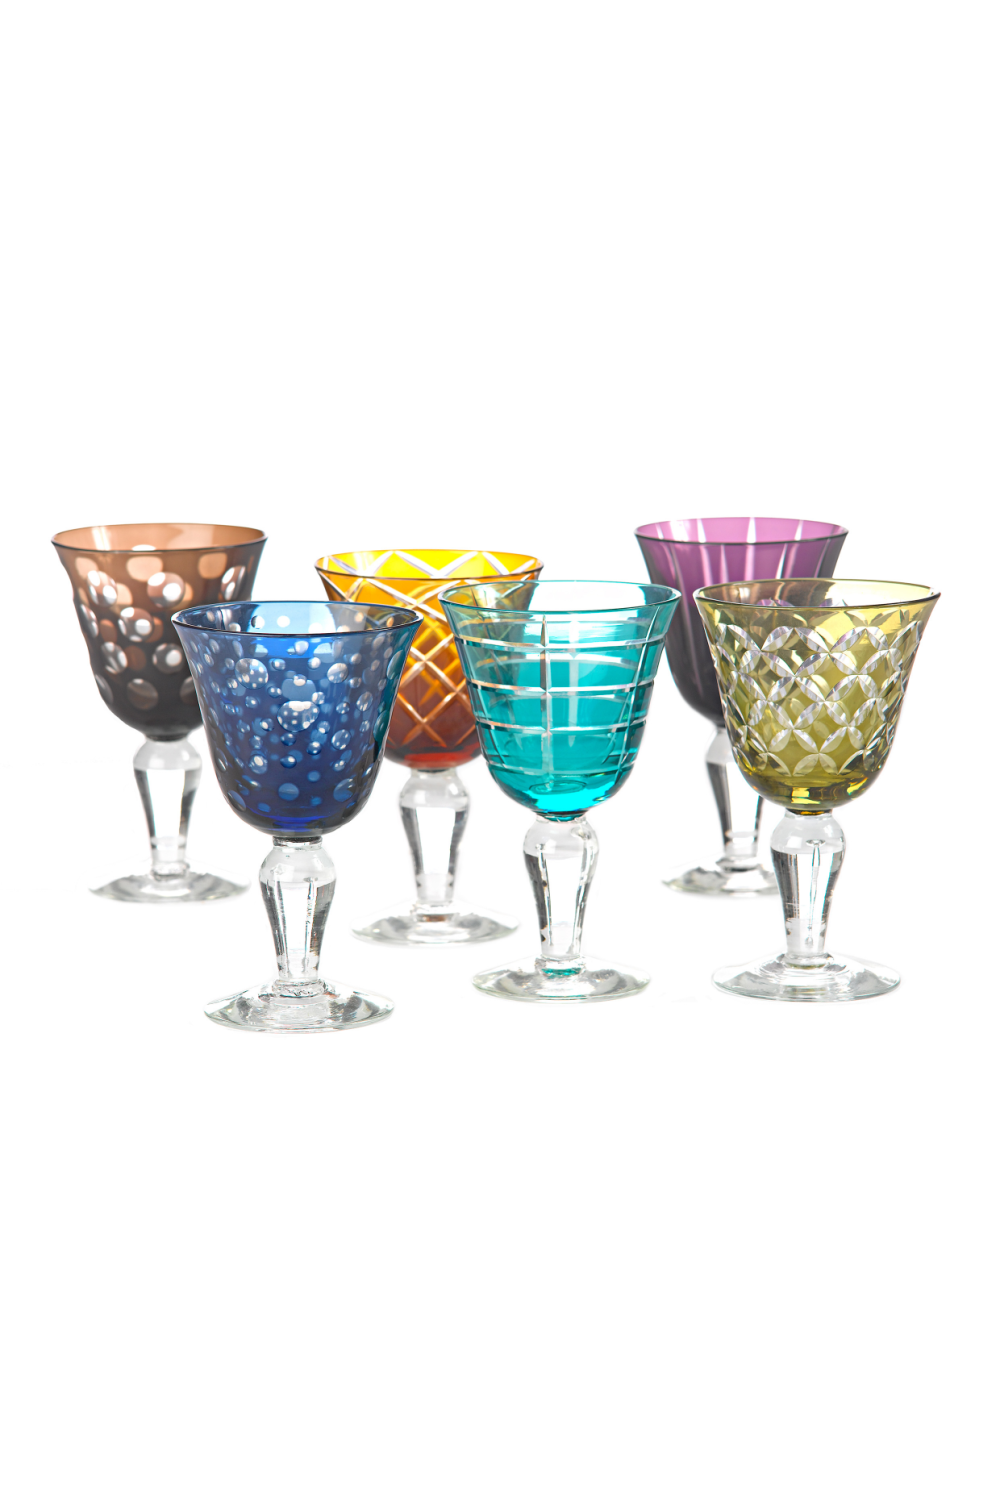 Multi-Colored Wine Glass | Pols Potten Cuttings | Oroa.com